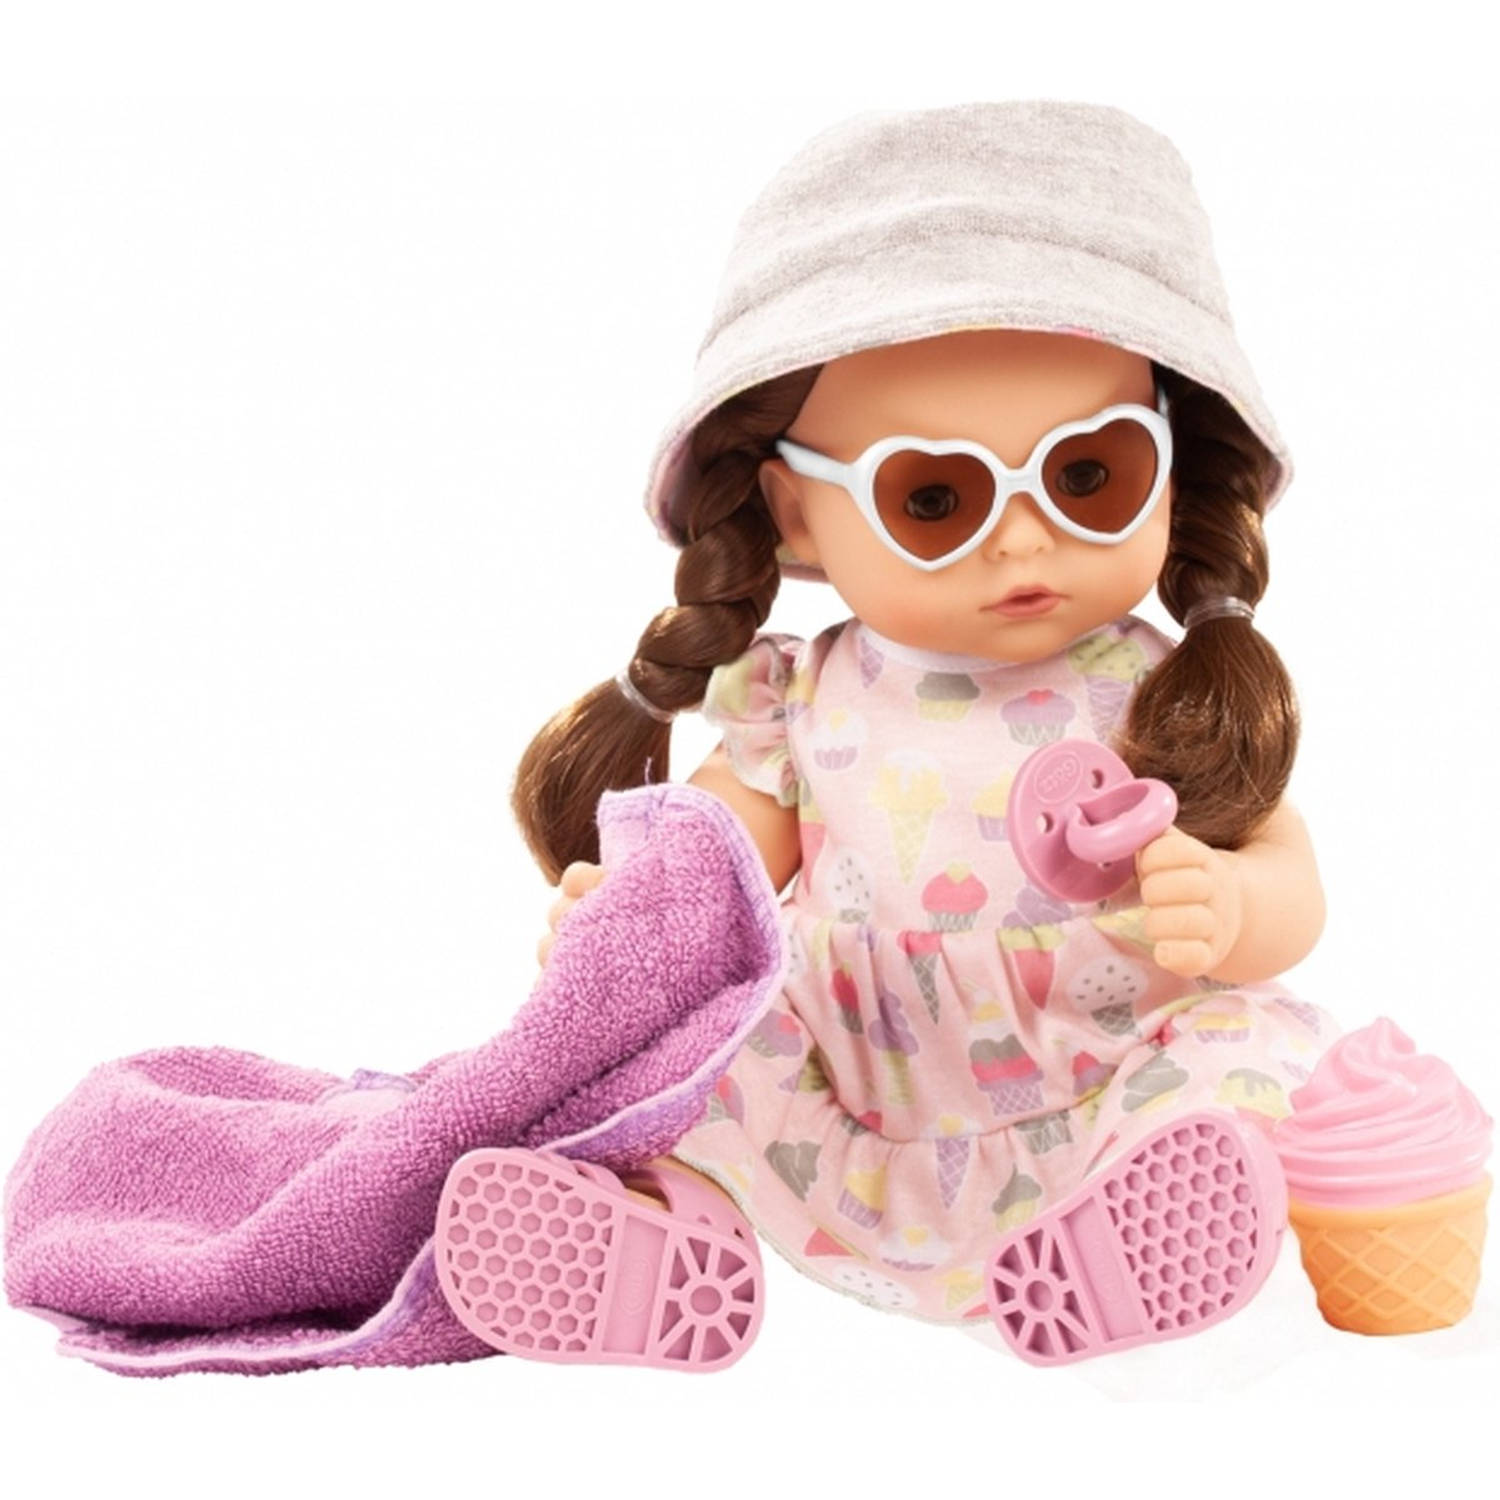 Götz badpop babypop maxy aquini ijsco 42cm incl ijsje, handdoek, zonnebril